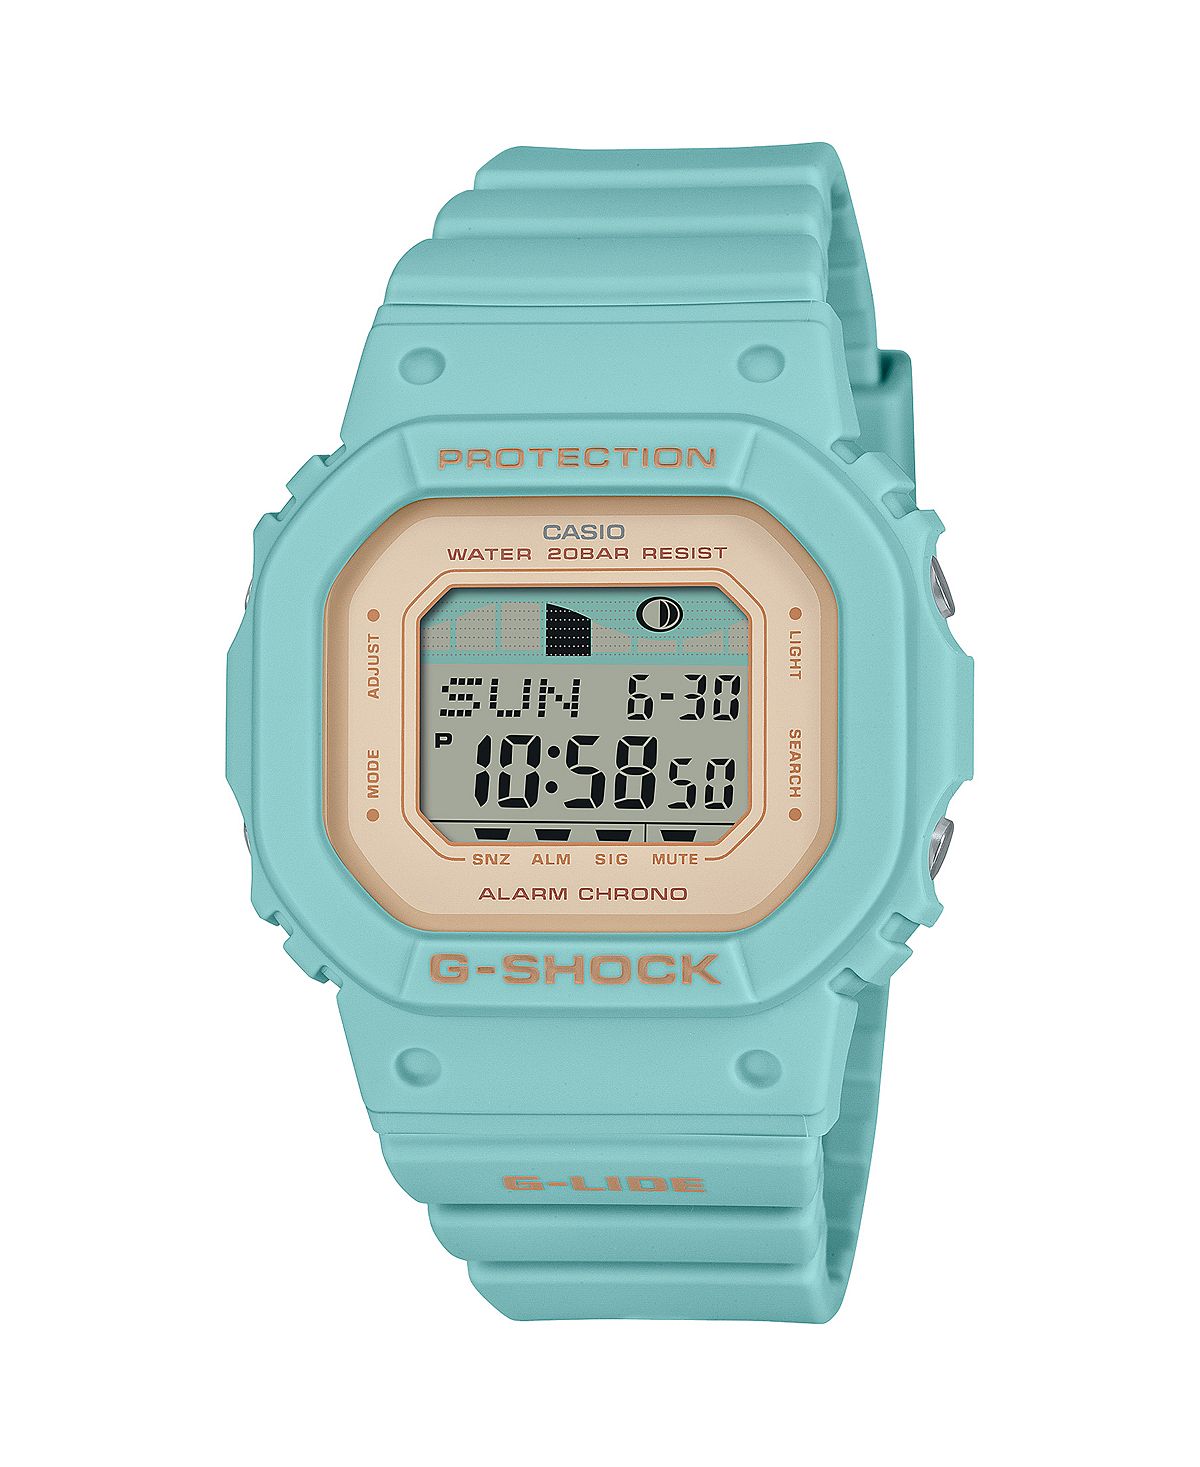 Цифровые пластиковые часы унисекс, цвет морской волны, 40,5 мм, GLXS5600-3 G-Shock цена и фото